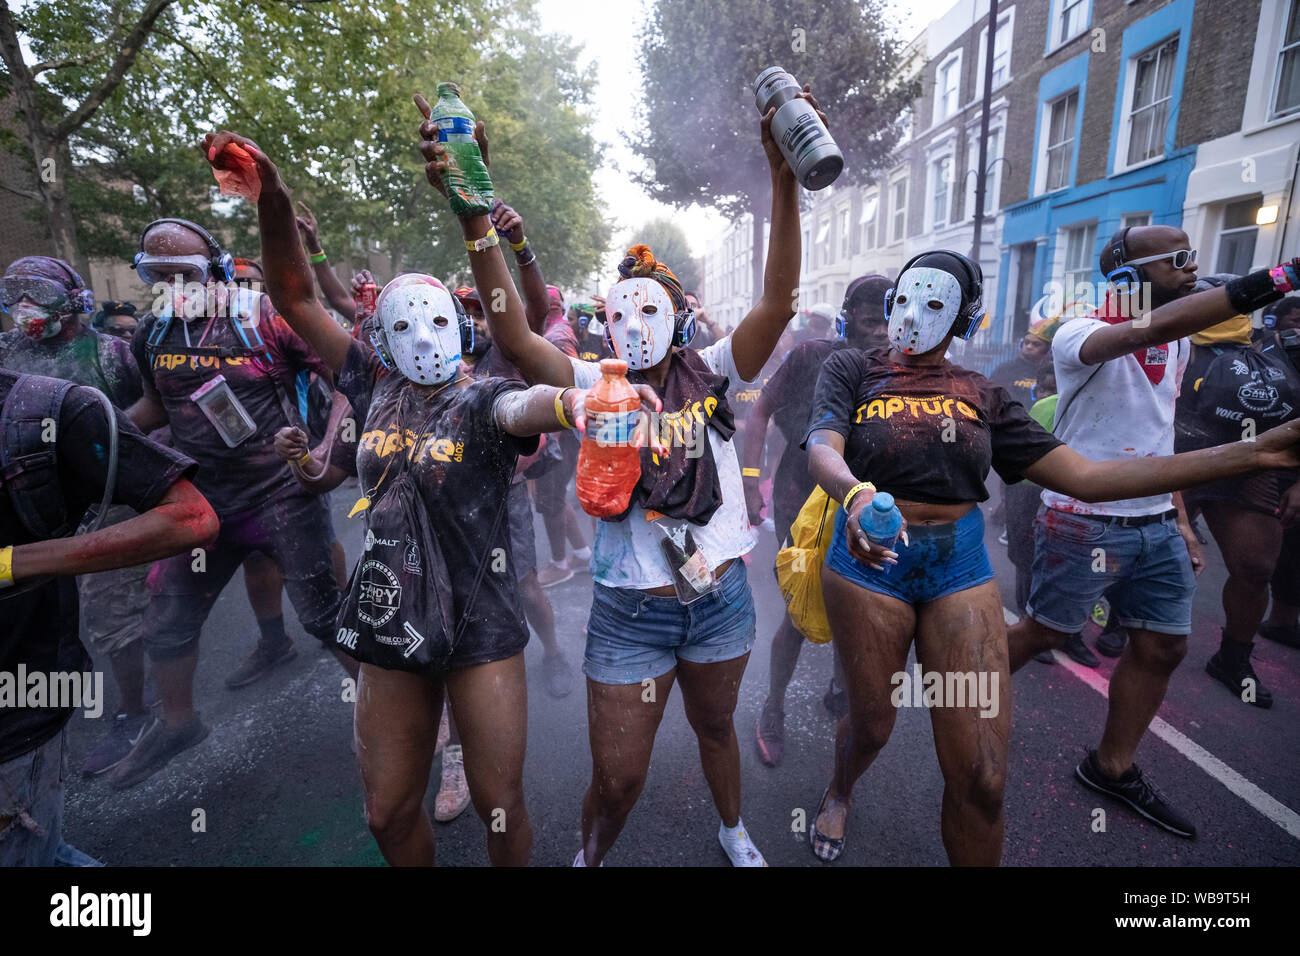 Londres, Royaume-Uni. 25 août 2019. Jouvert commence le défilé de carnaval de Notting Hill 2019 festivités avec la peinture traditionnelle, l'huile et de poudre de couleur d'être jeté aux sons de tambours africains et le rythme des bandes. Crédit : Guy Josse / Alamy Live News Banque D'Images